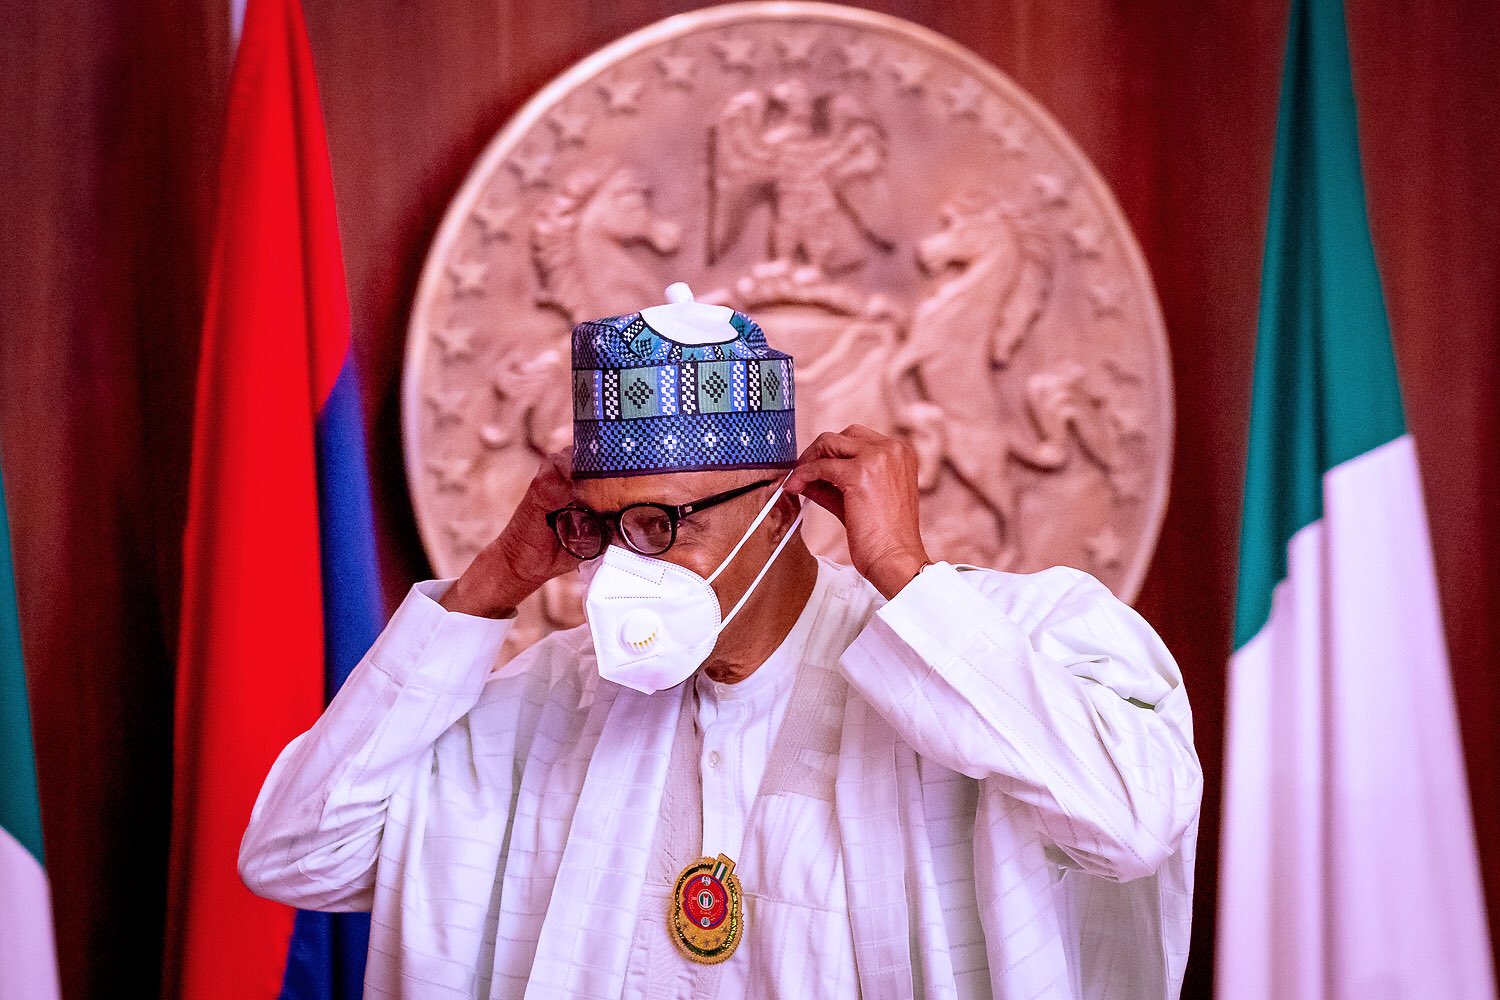 Nigeria: PDP berates Buhari for his five-year rule, says “illusory self-assessment”